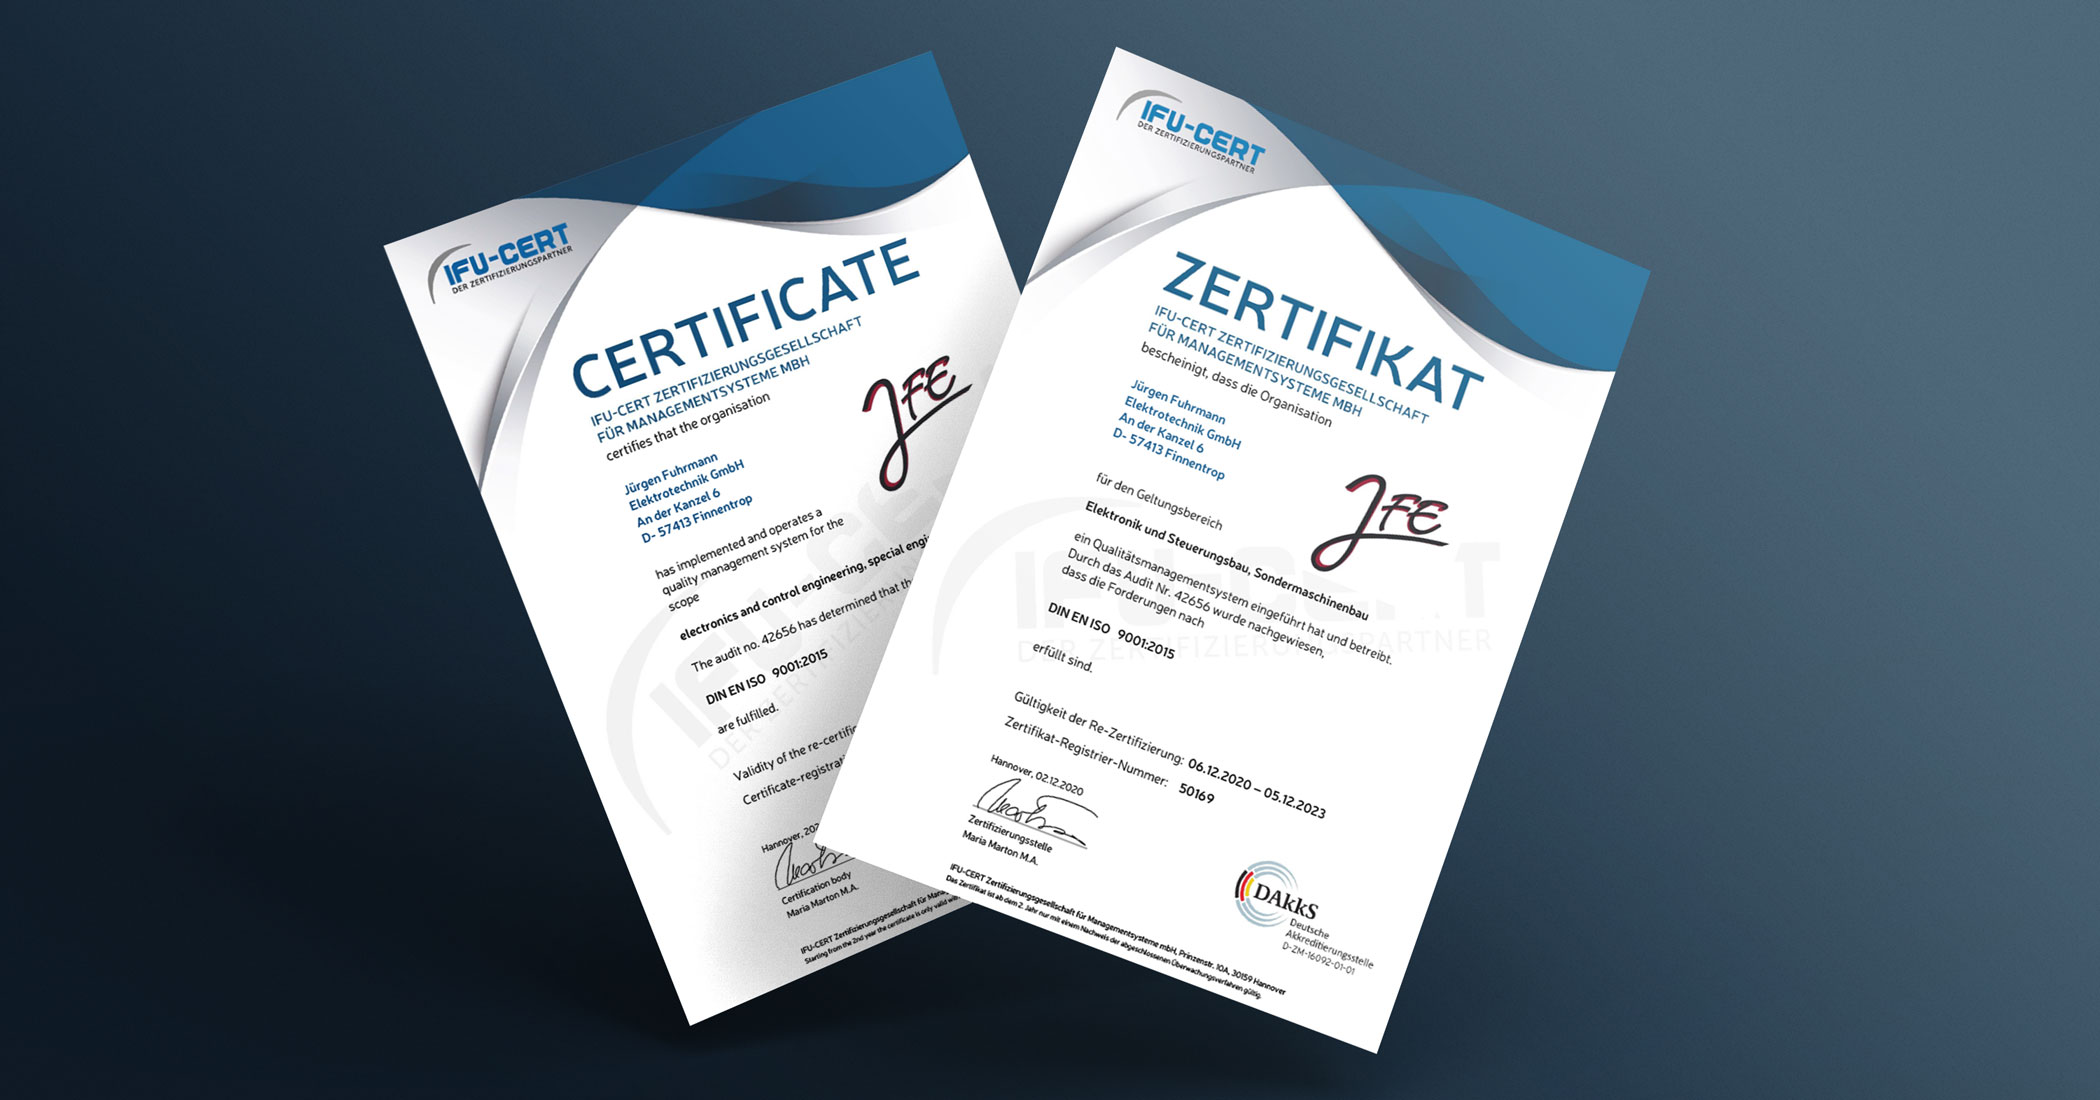 Die Zertifikate nach DIN EN ISO 9001:2015 in deutsch und englisch auf einem blauen Hintergrund